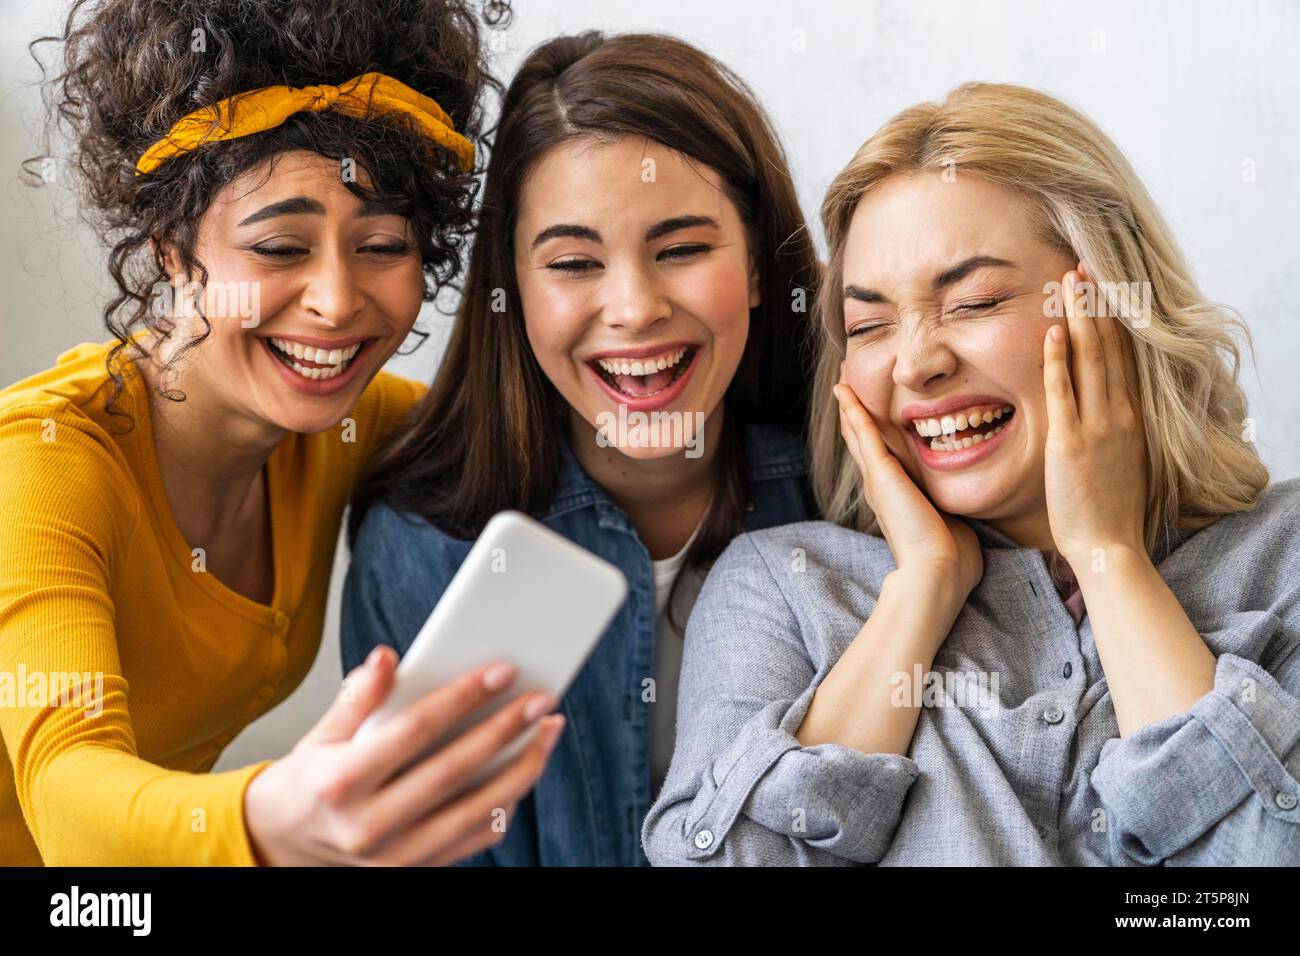 Vista frontale tre donne felici sorridenti che scattano selfie Foto Stock